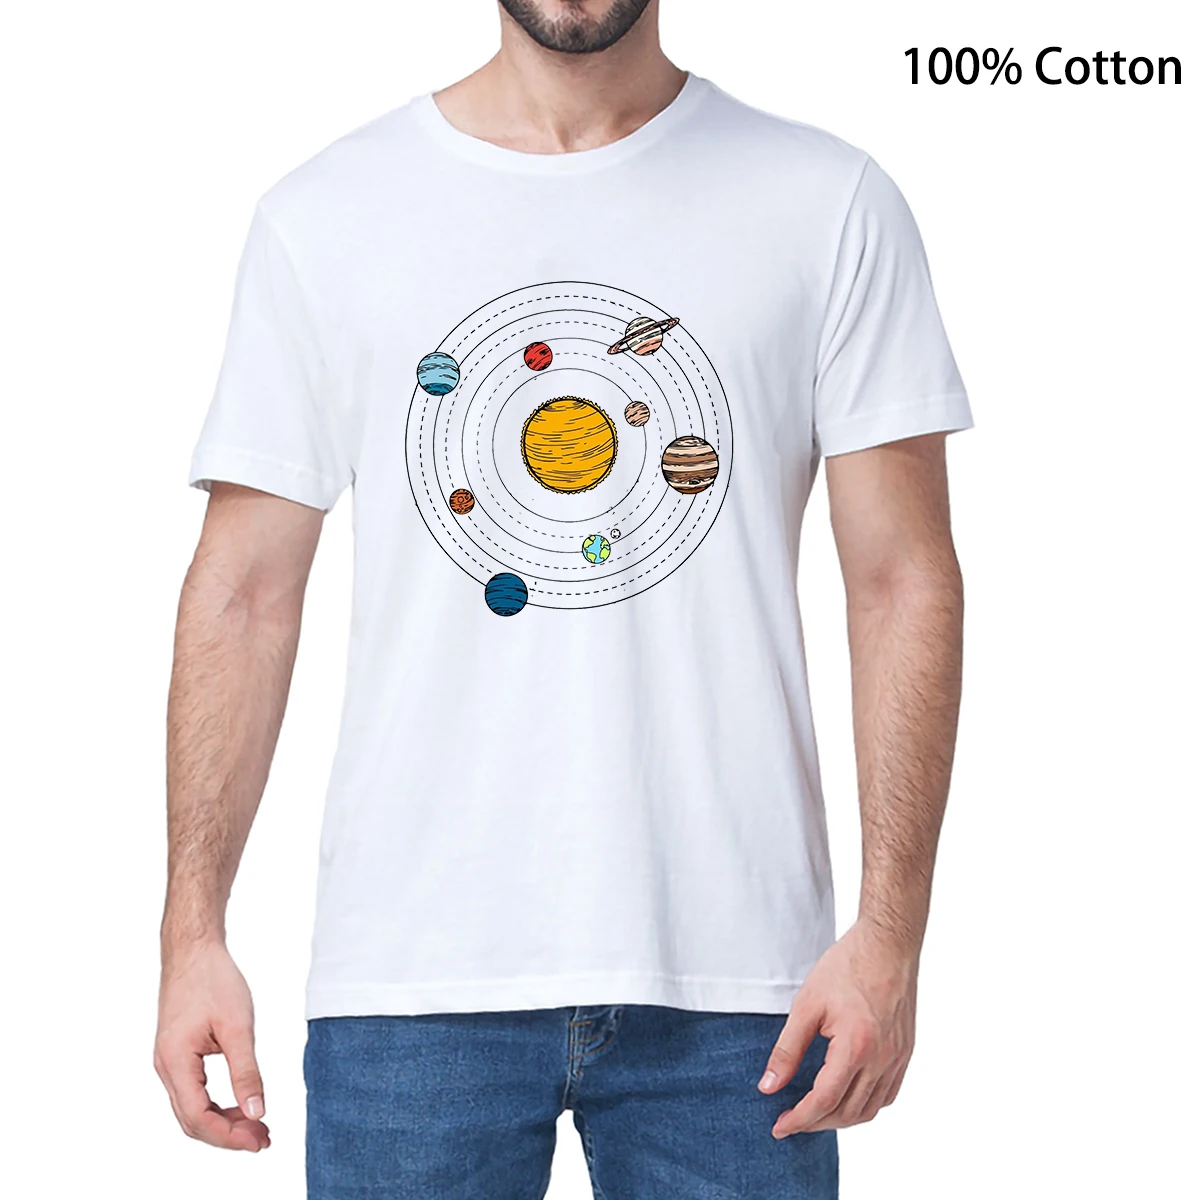 Camiseta informal Harajuku Unisex, 100% algodón, Sistema Solar, Galaxia, universo espacial, amante de los astronautas, novedad